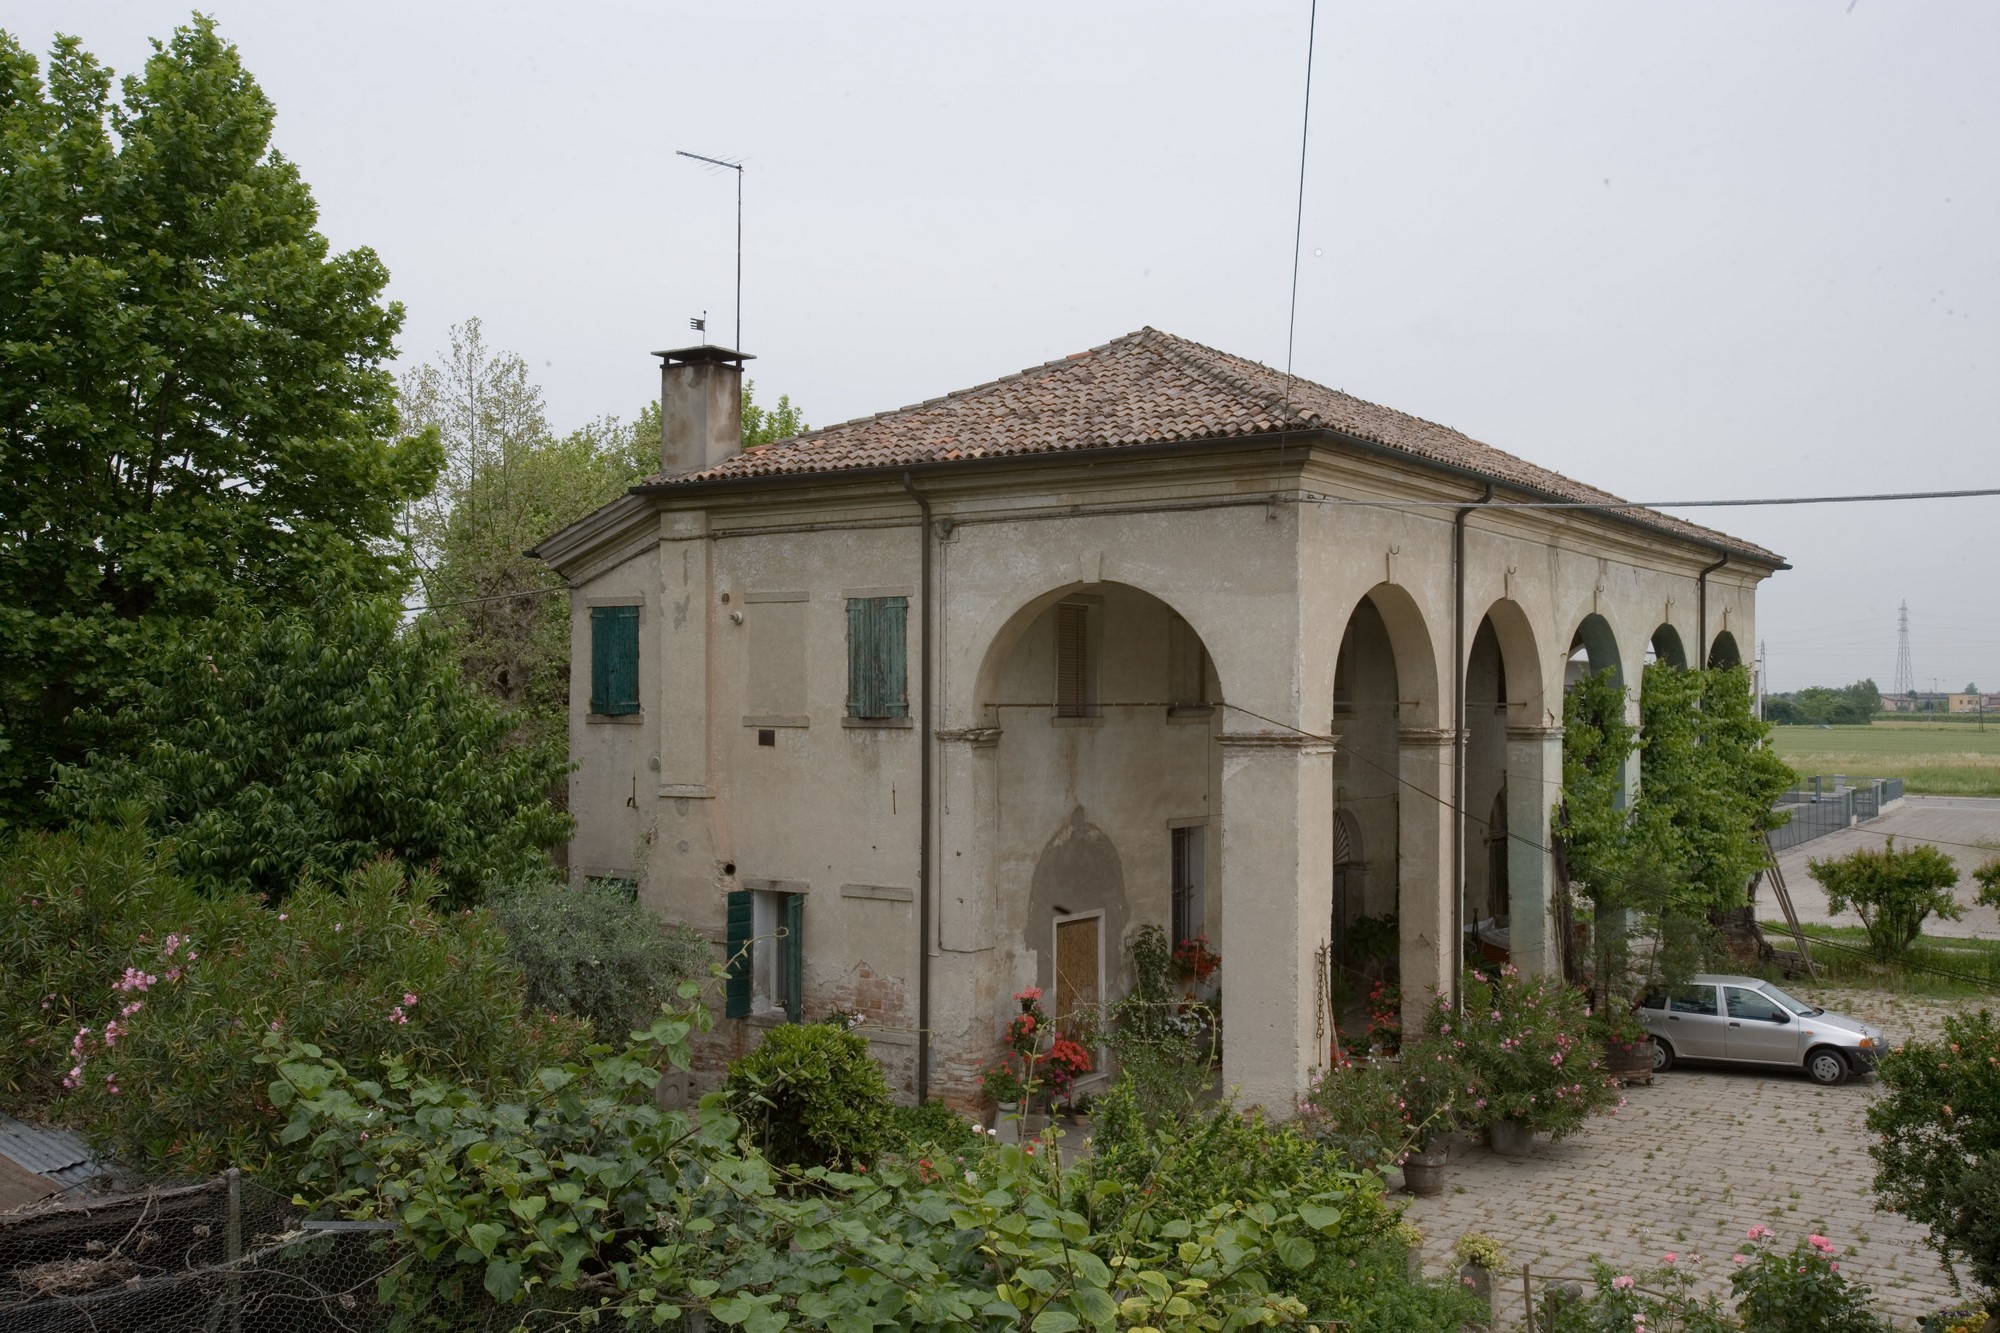 Barchessa di Villa Cà Grimani (barchessa) - Battaglia Terme (PD) 